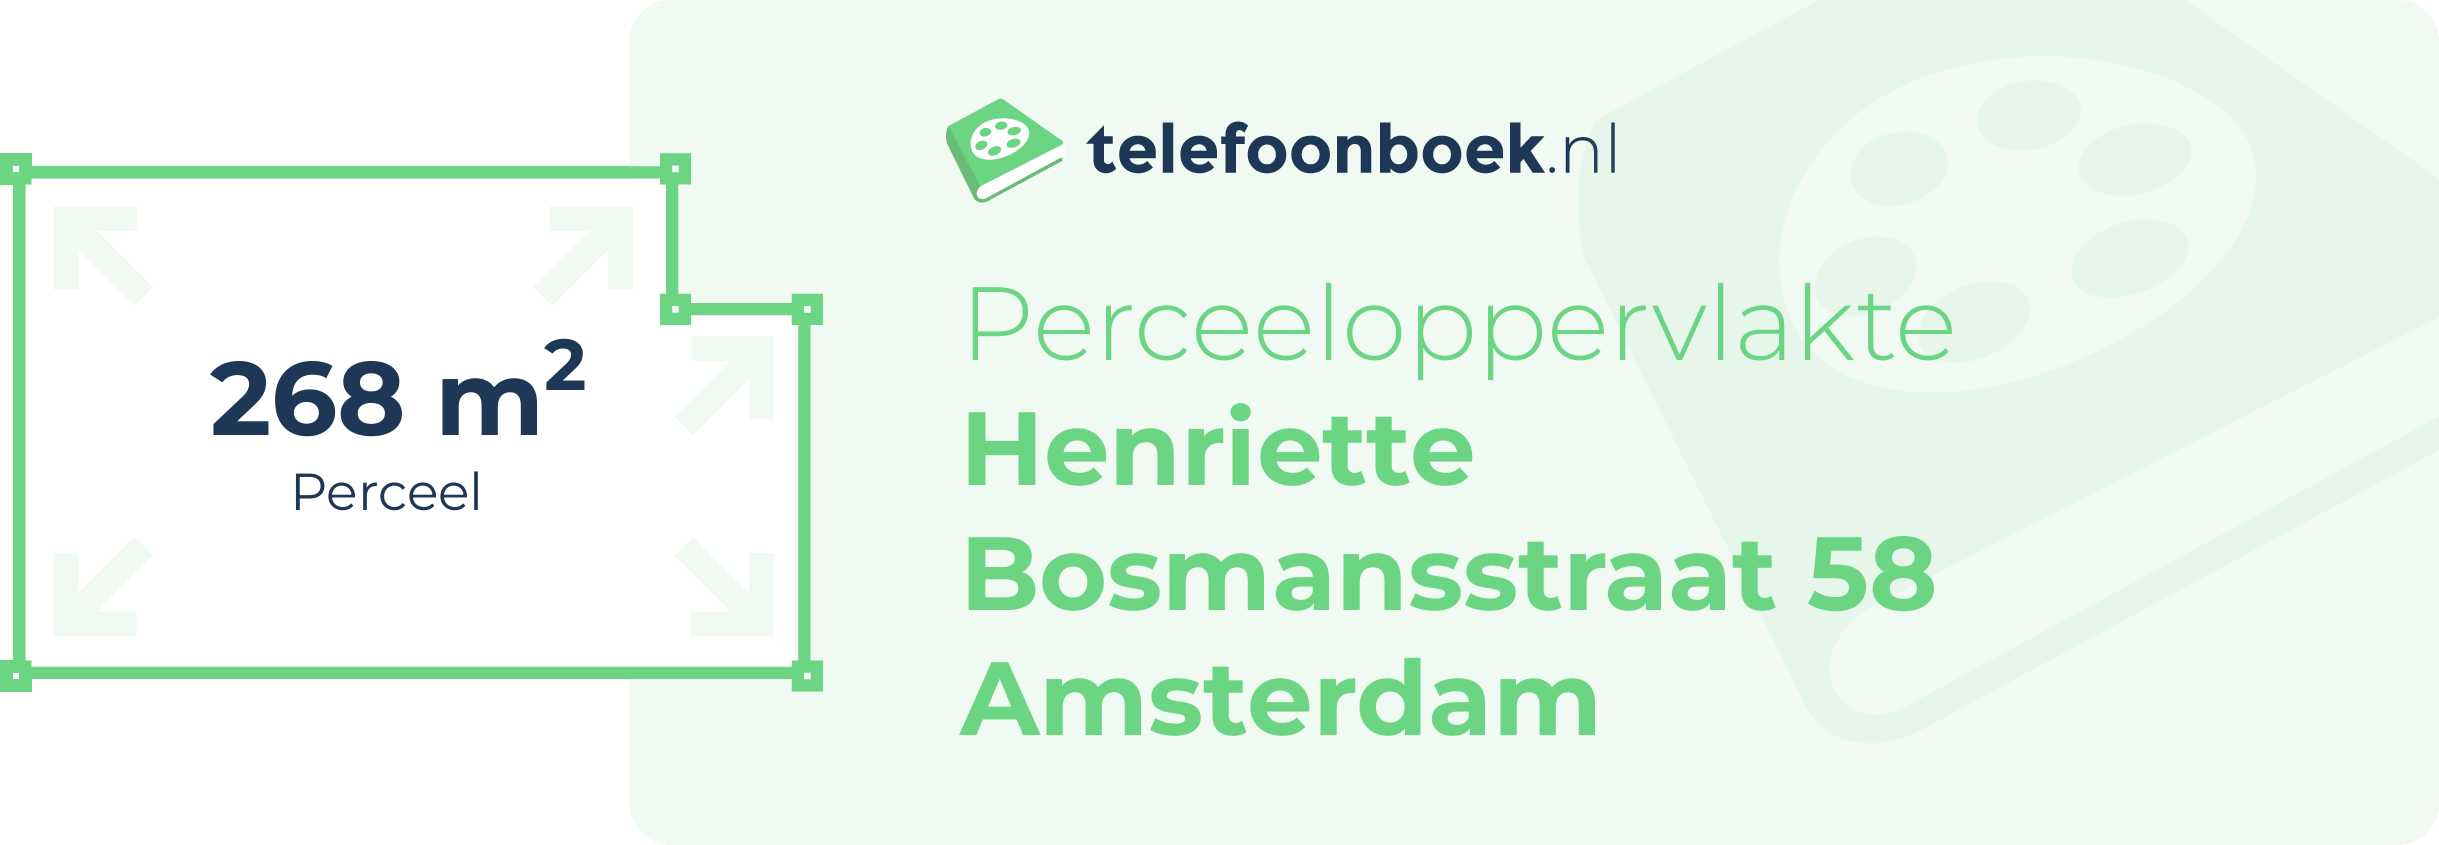 Perceeloppervlakte Henriette Bosmansstraat 58 Amsterdam